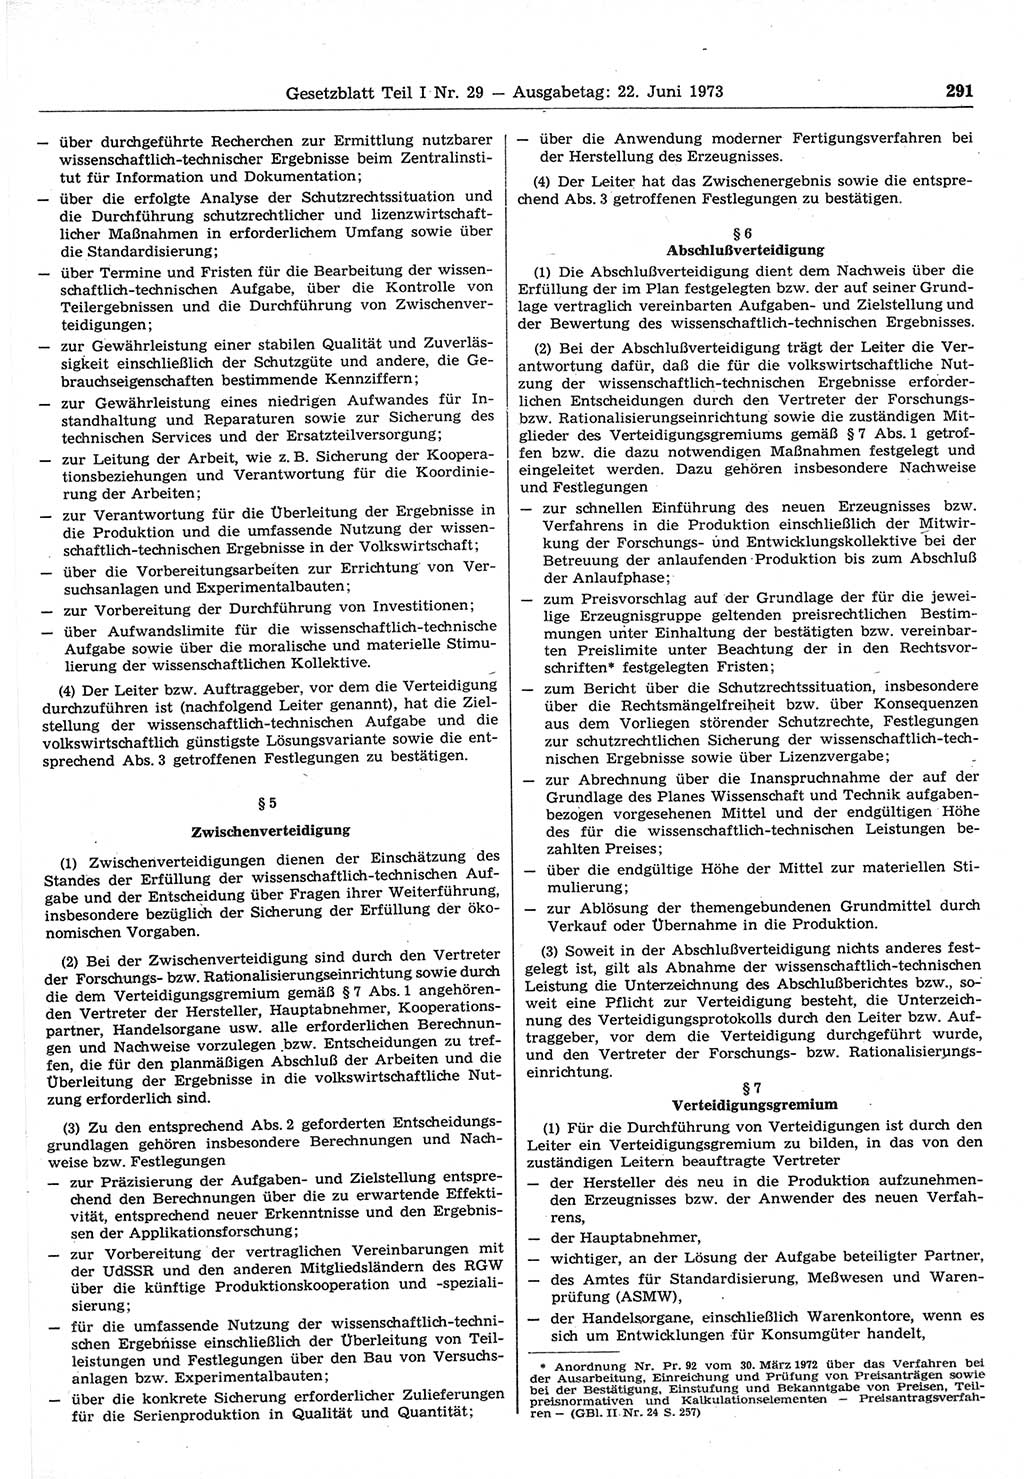 Gesetzblatt (GBl.) der Deutschen Demokratischen Republik (DDR) Teil Ⅰ 1973, Seite 291 (GBl. DDR Ⅰ 1973, S. 291)